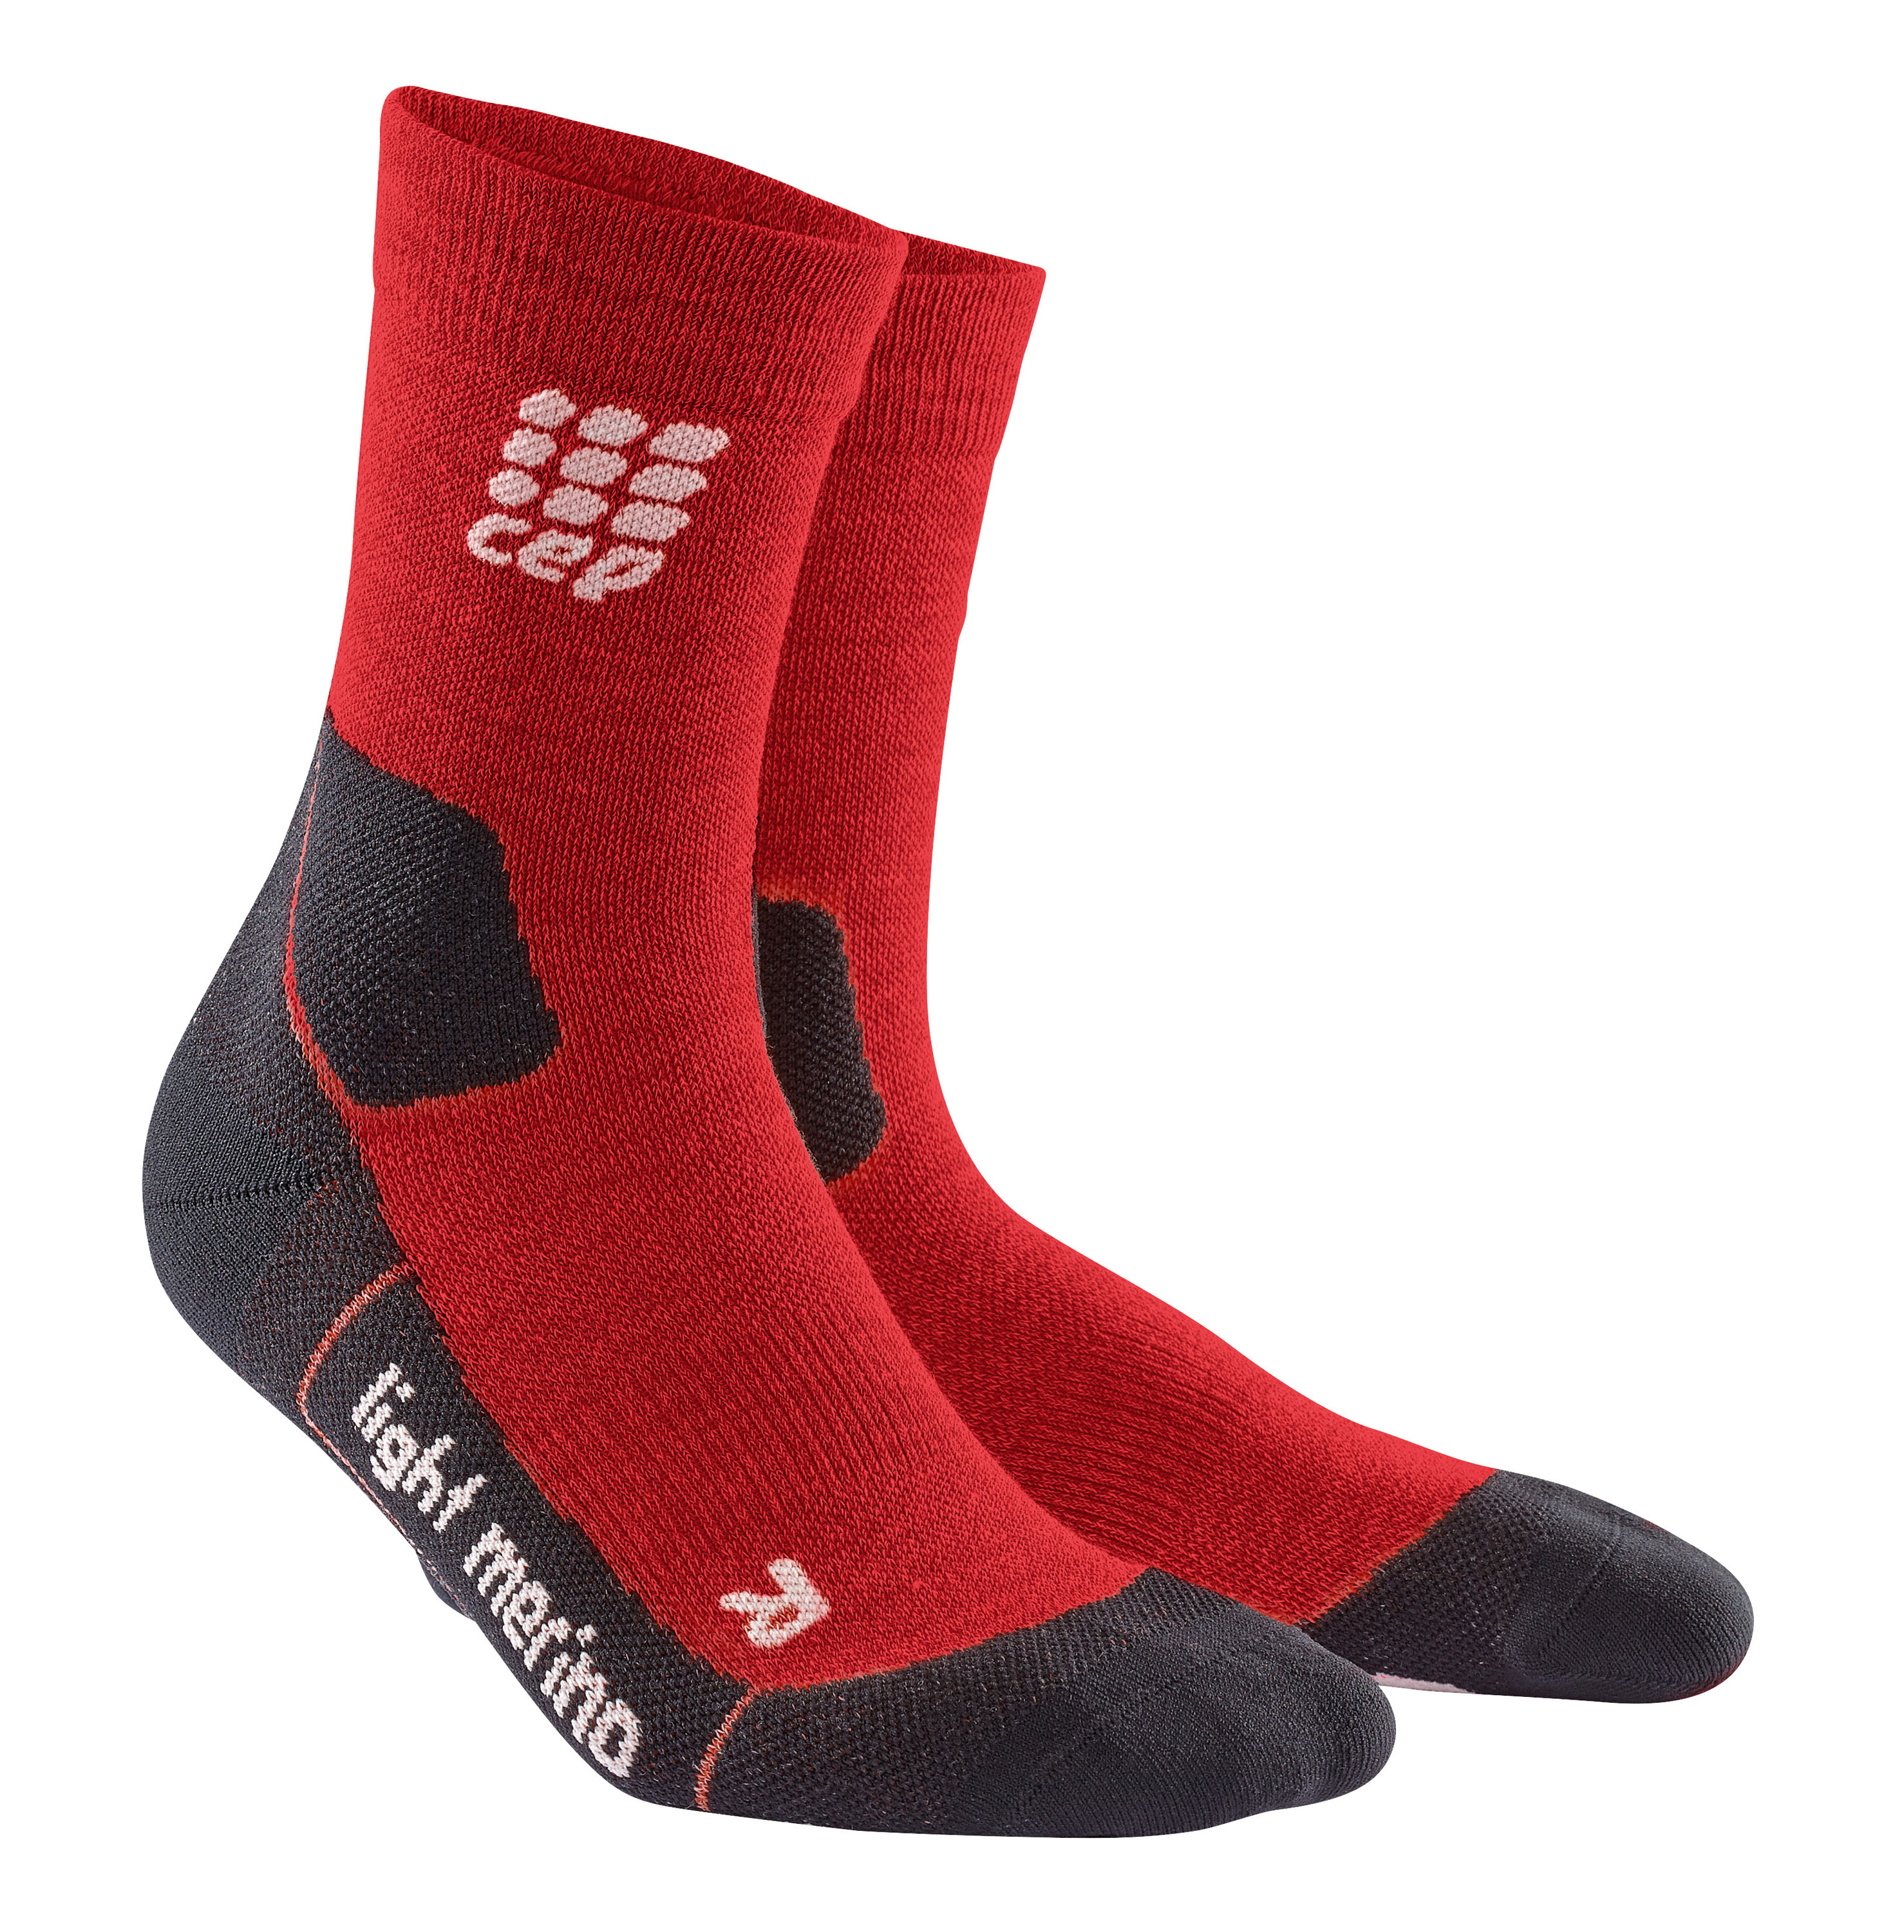 CEP Outdoor Light Merino Mid Cut Socks–Stützsocke. Verbessert die Stabilität der Muskeln und Gelenke für mehr Trittsicherheit und Kontrolle, vor allem wenn man langsam müde wird. € 24,90 © CEP